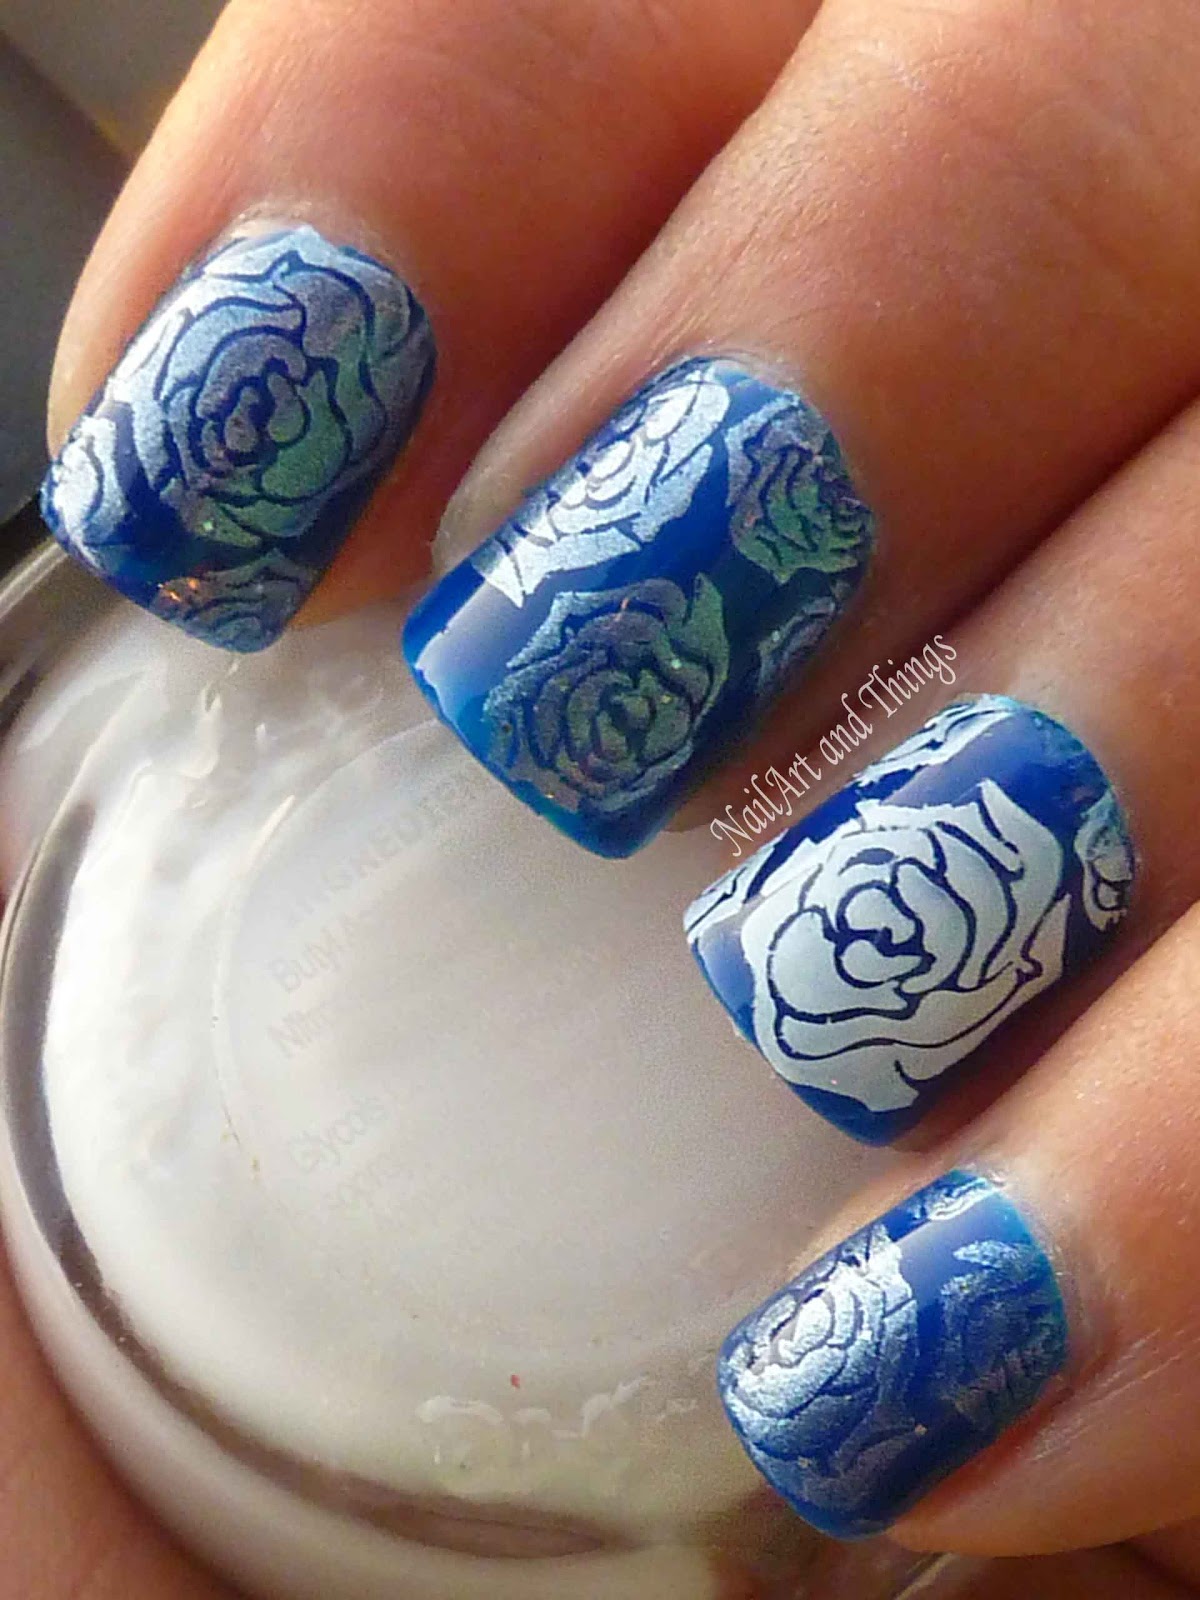 NailArt and Things: Blue Roses Porcelain Nail Art (Jelly polish)